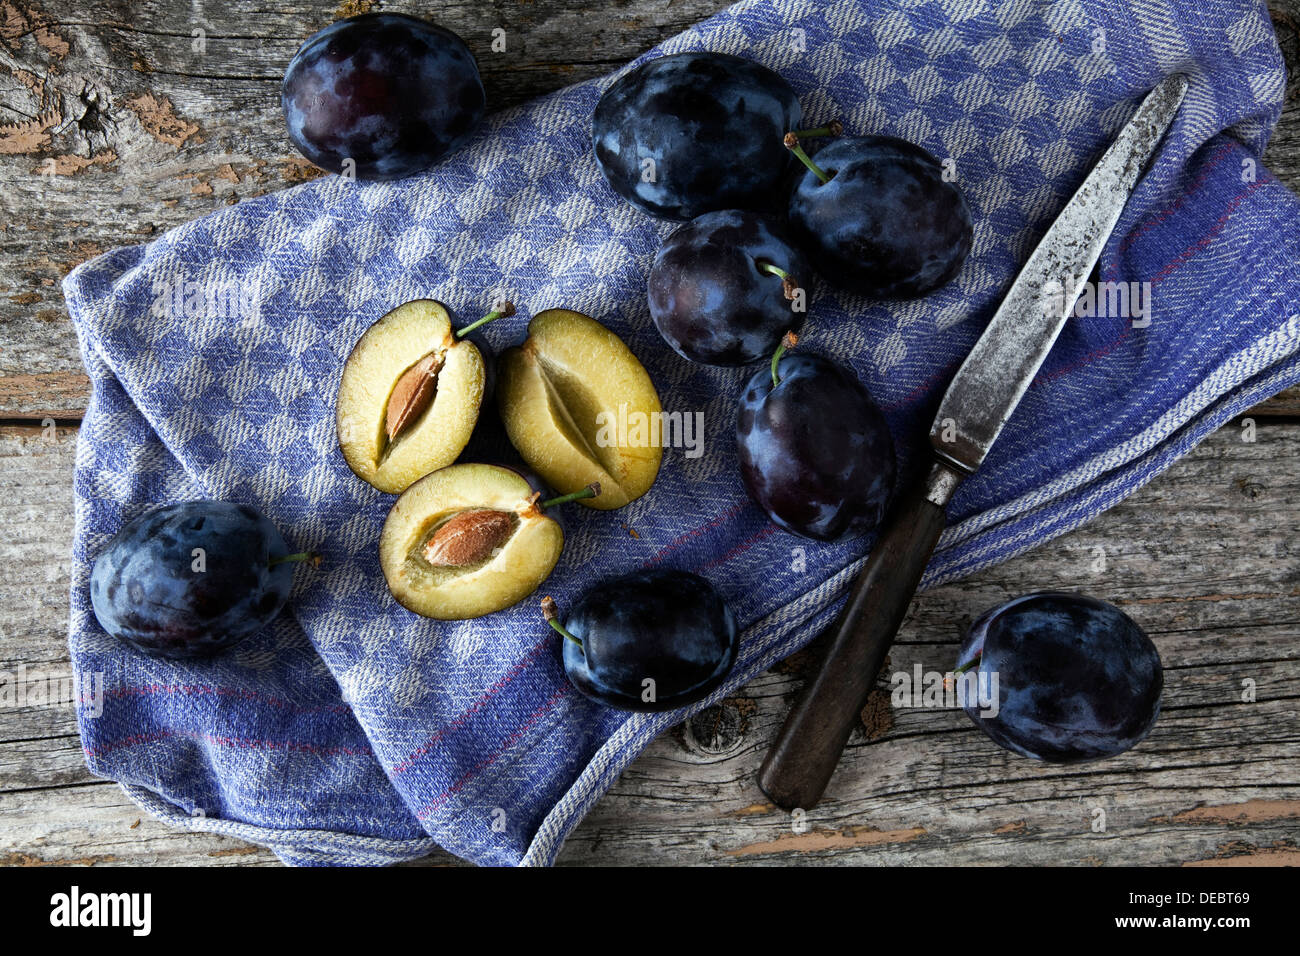 Les prunes (Prunus domestica) sur une serviette de cuisine, avec un couteau Banque D'Images